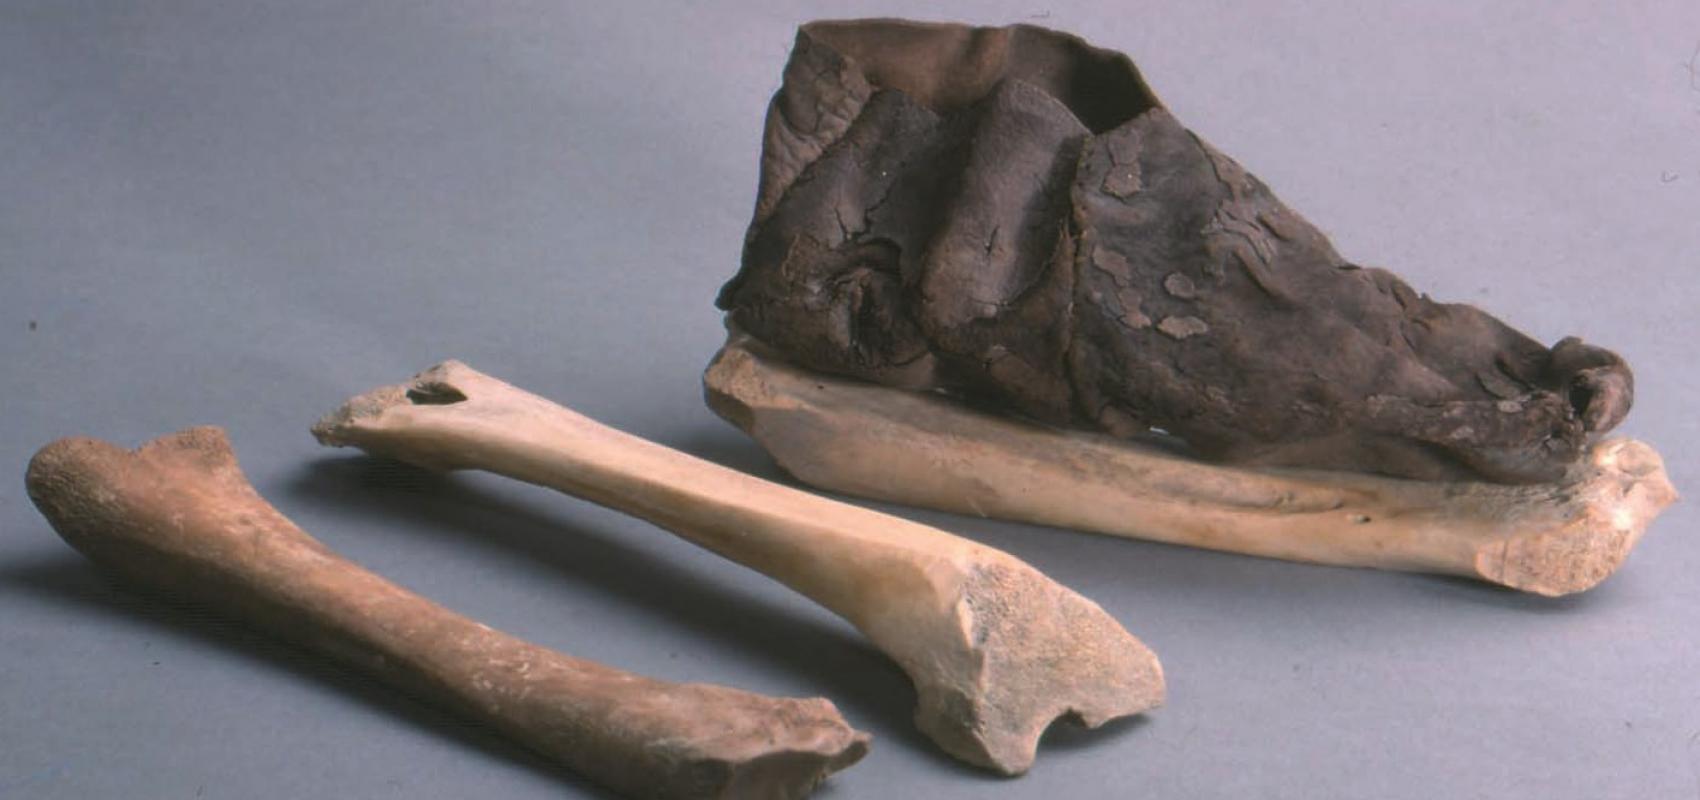 Patins en os et chaussure en cuir du XIe siècle découverts à Saint-Denis -  - © E. Jacquot / UASD